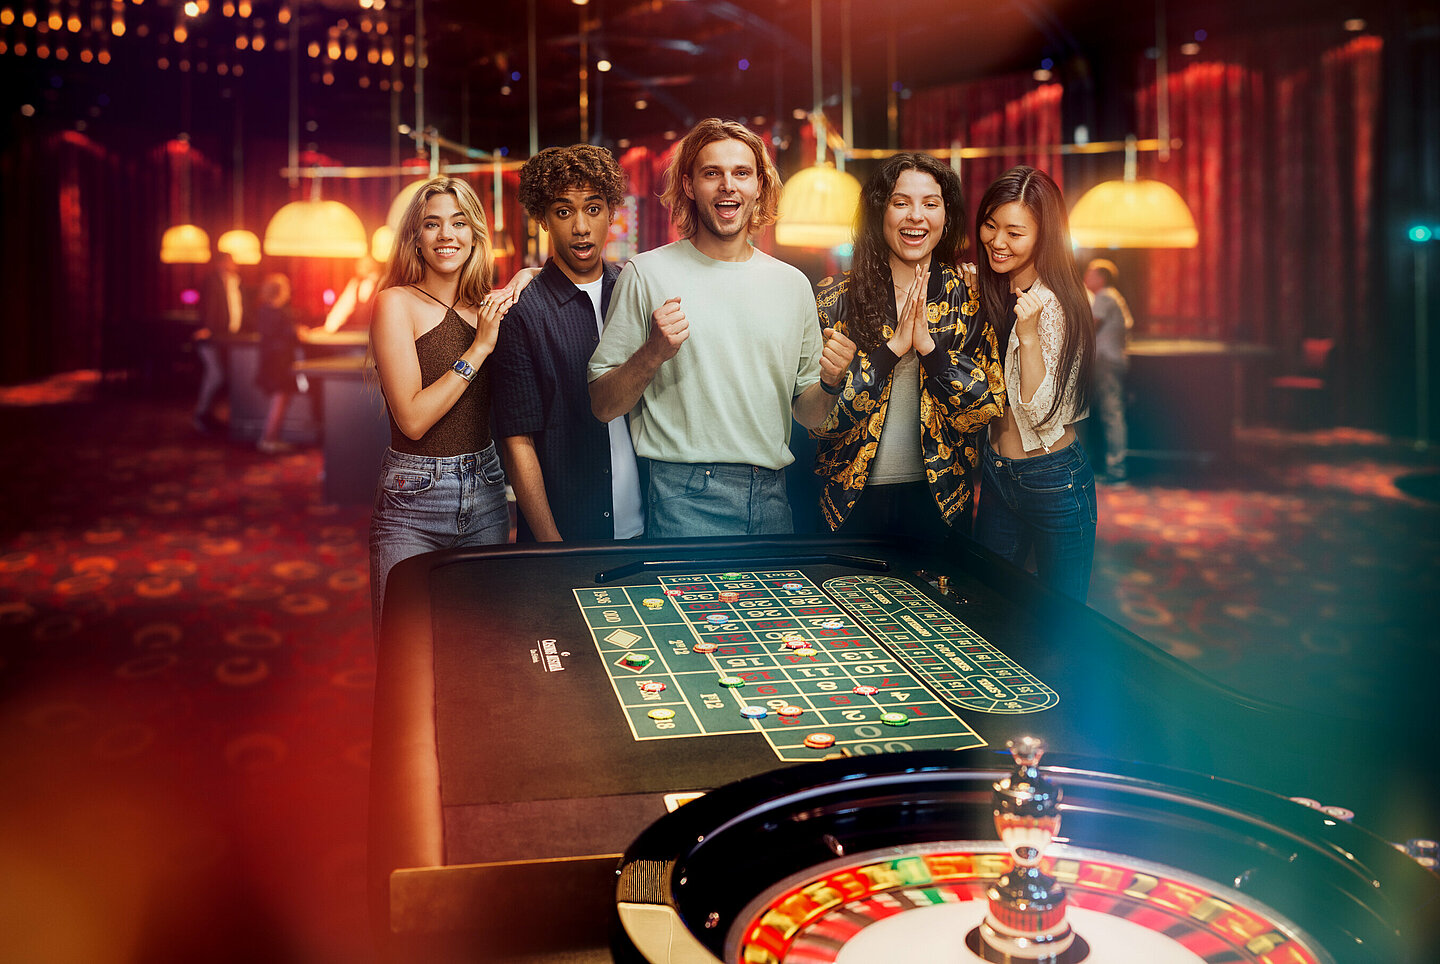 Casino Gruppe Fun & Friends am Roulette Tisch